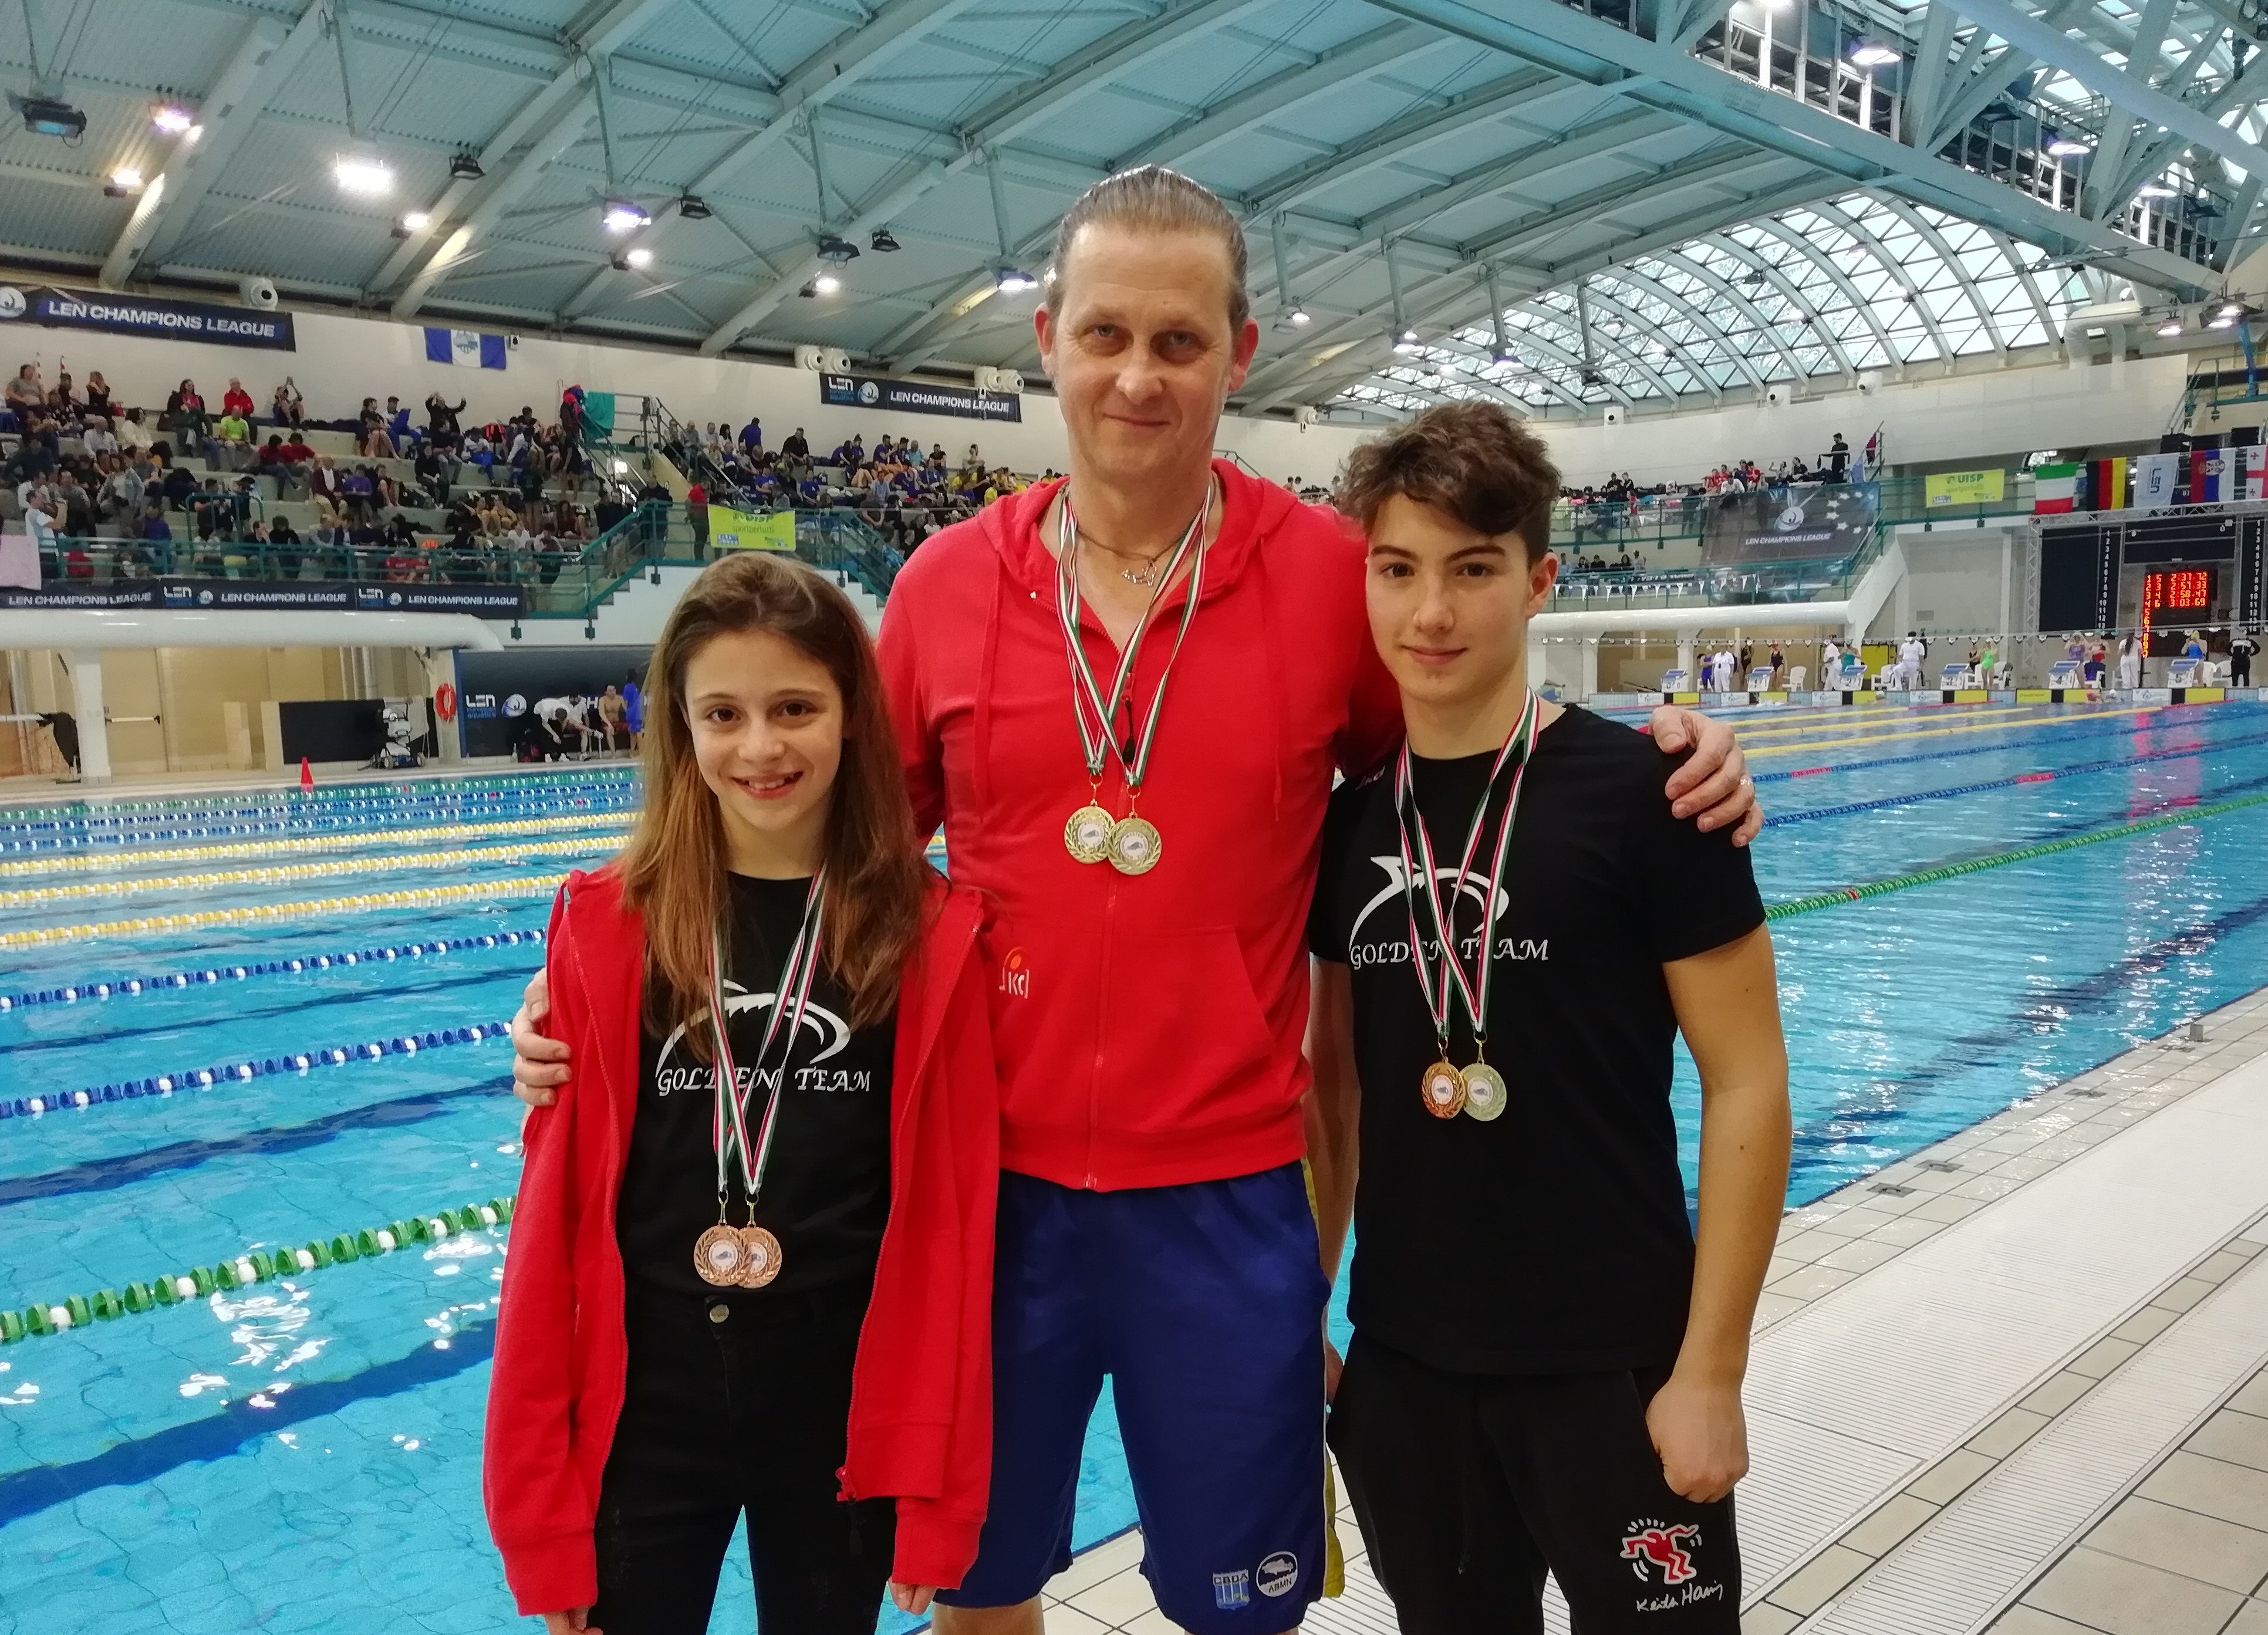 Nuoto: Kormendi e Tartara del Golden Team primi ai campionati invernali